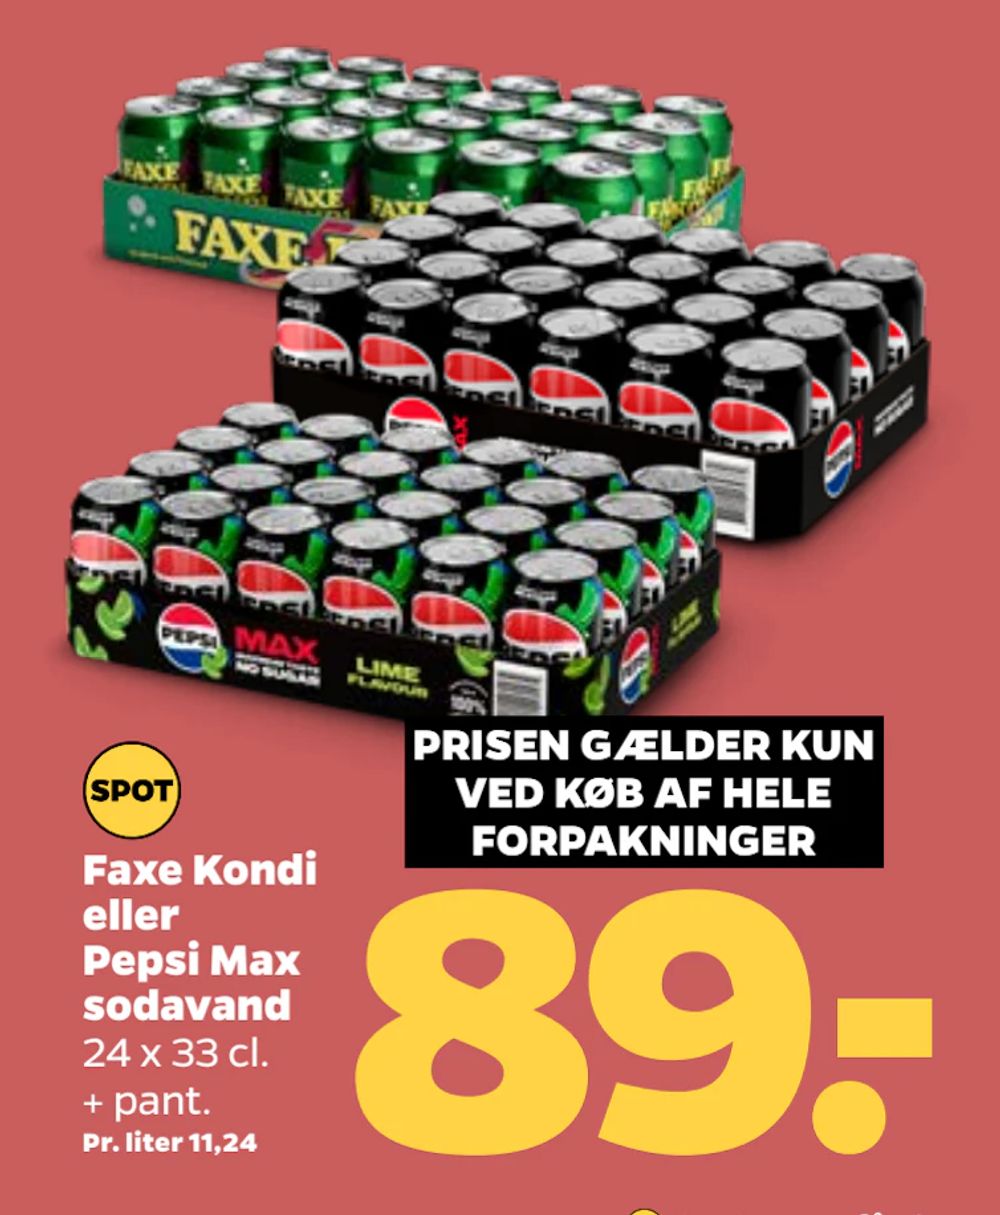 Tilbud på Faxe Kondi eller Pepsi Max sodavand fra Netto til 89 kr.